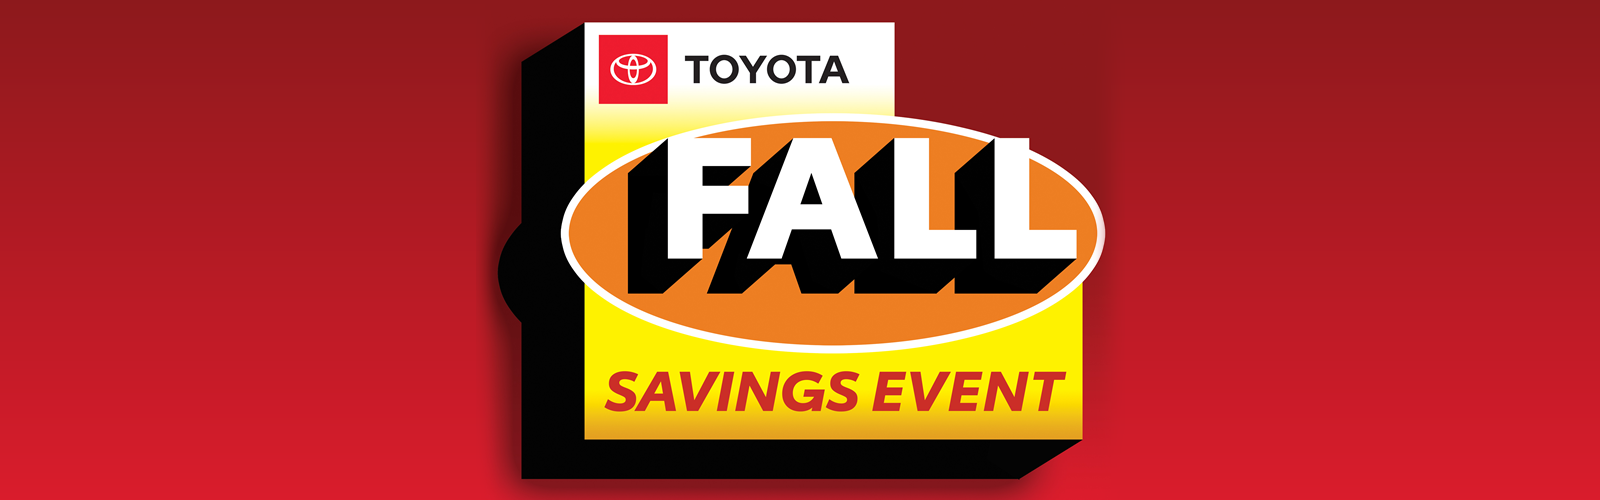 Toyota Fall Savings Event